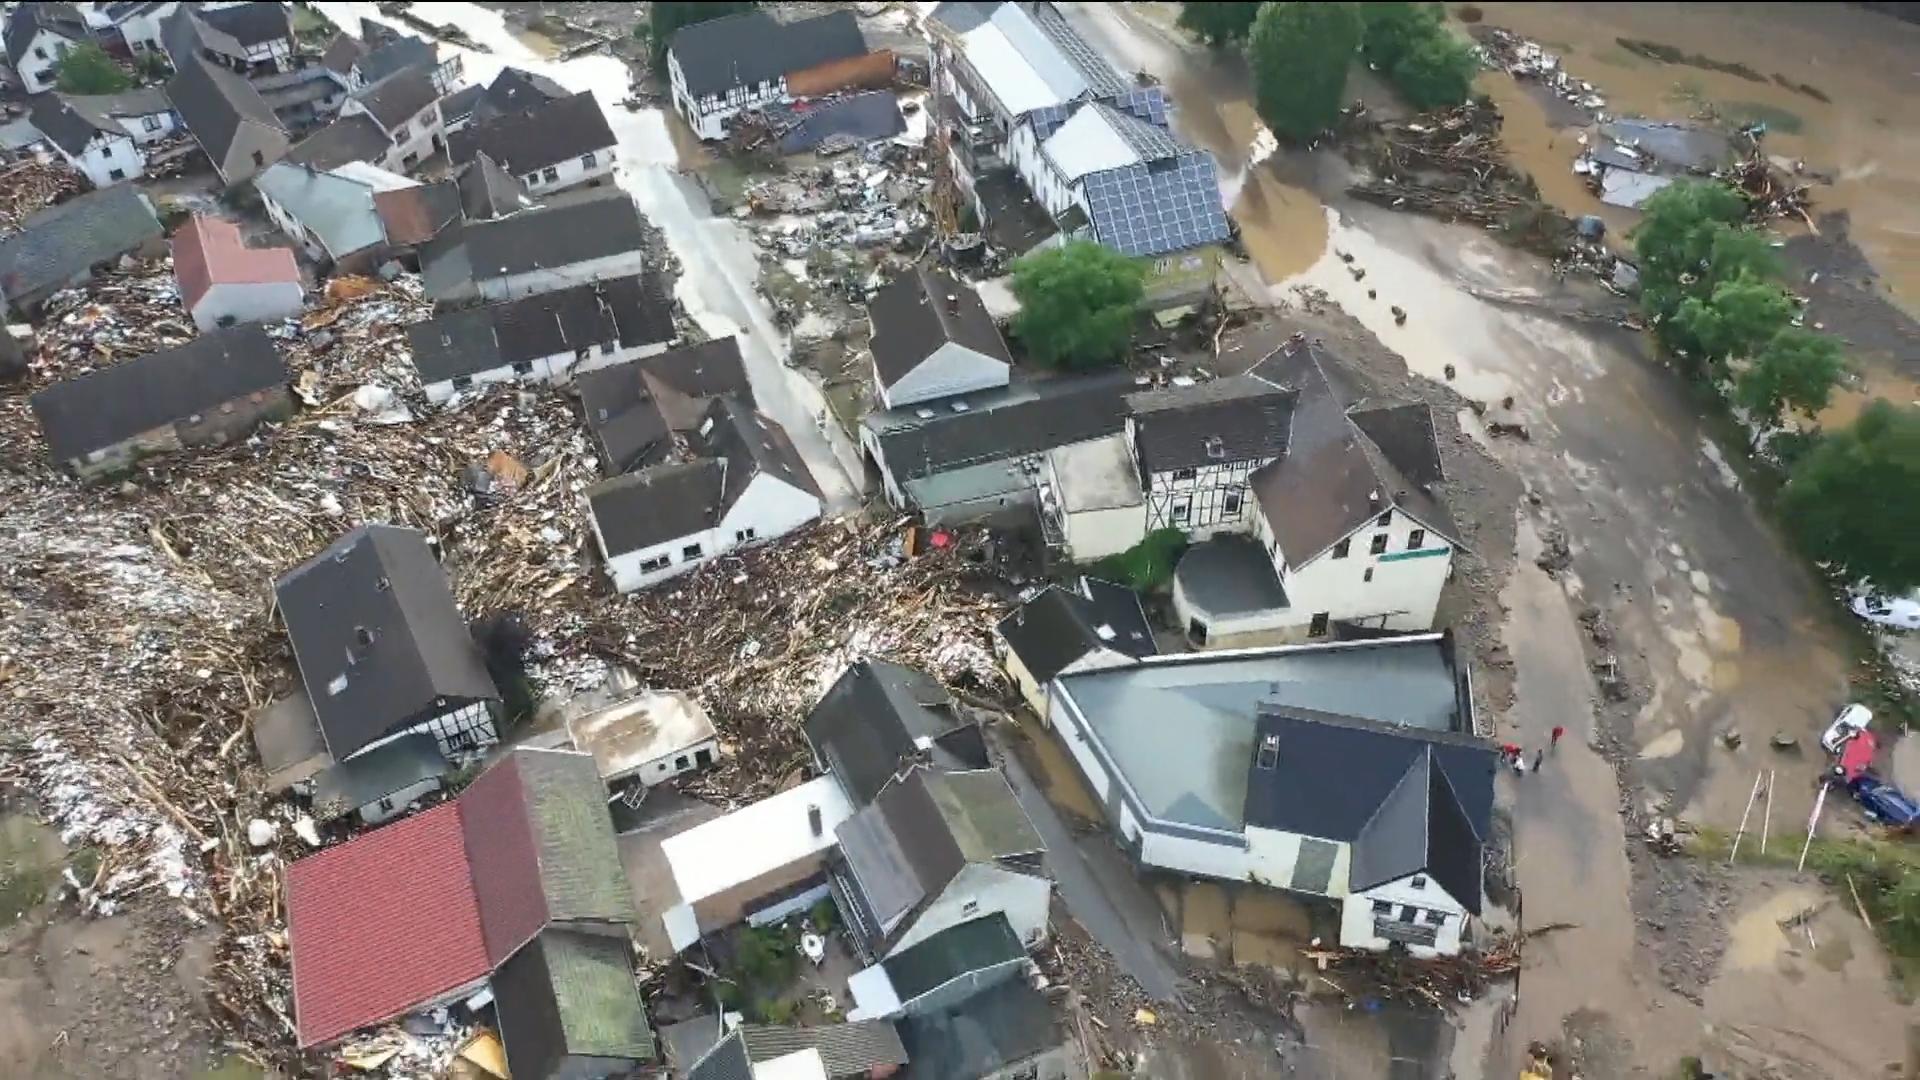 Luftbilder zeigen das Ausmaß der Zerstörung RTL-Reporter im Hochwassergebiet in Schuld (Eifel)